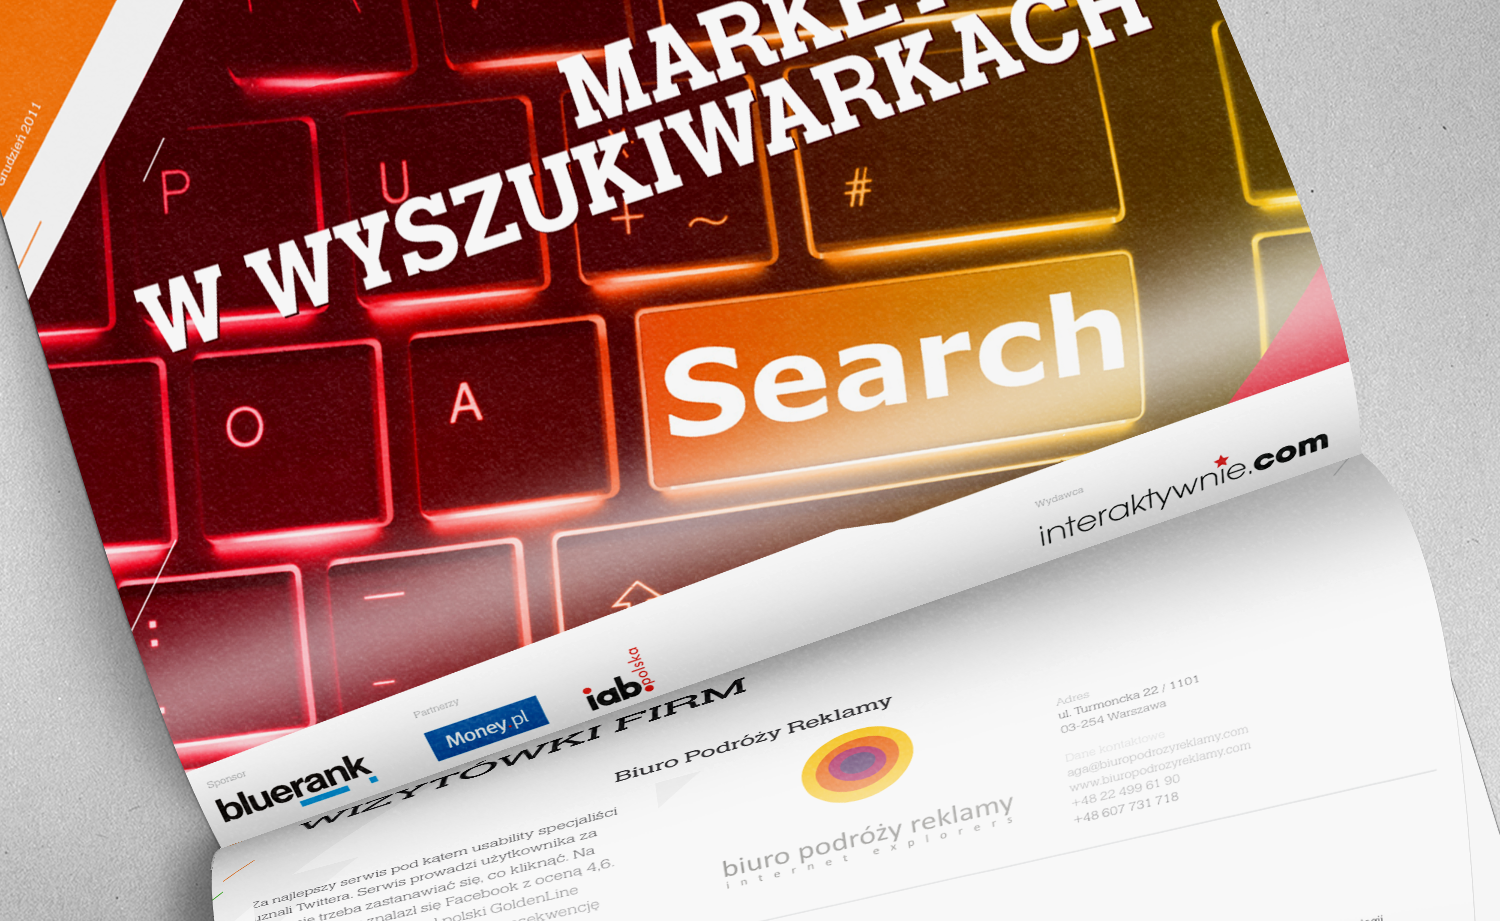 Raport Interaktywnie.com – marketing w wyszukiwarkach